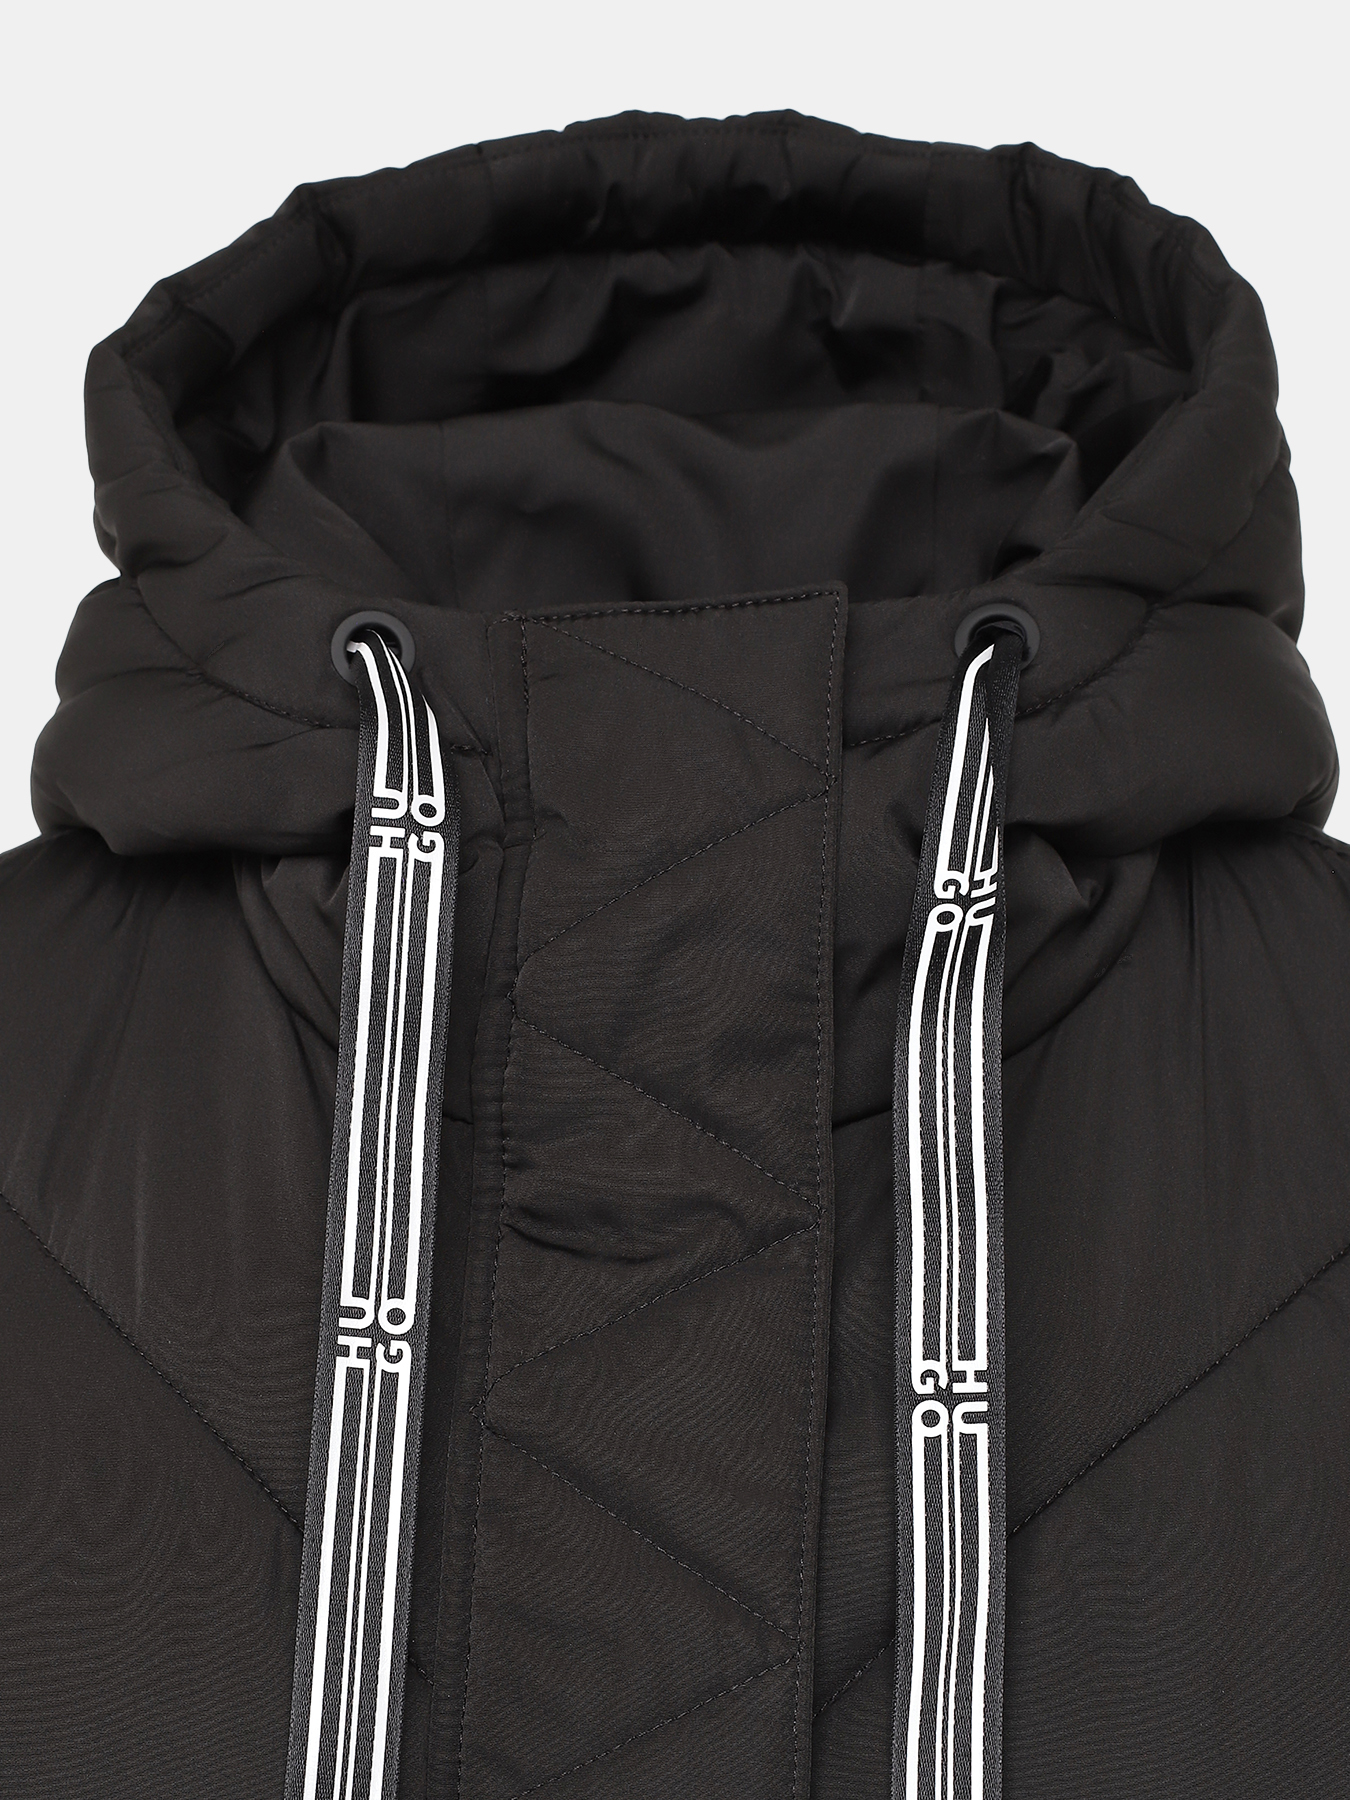 Пальто осеннее Favella HUGO 427453-043, цвет черный, размер 44-46 - фото 3